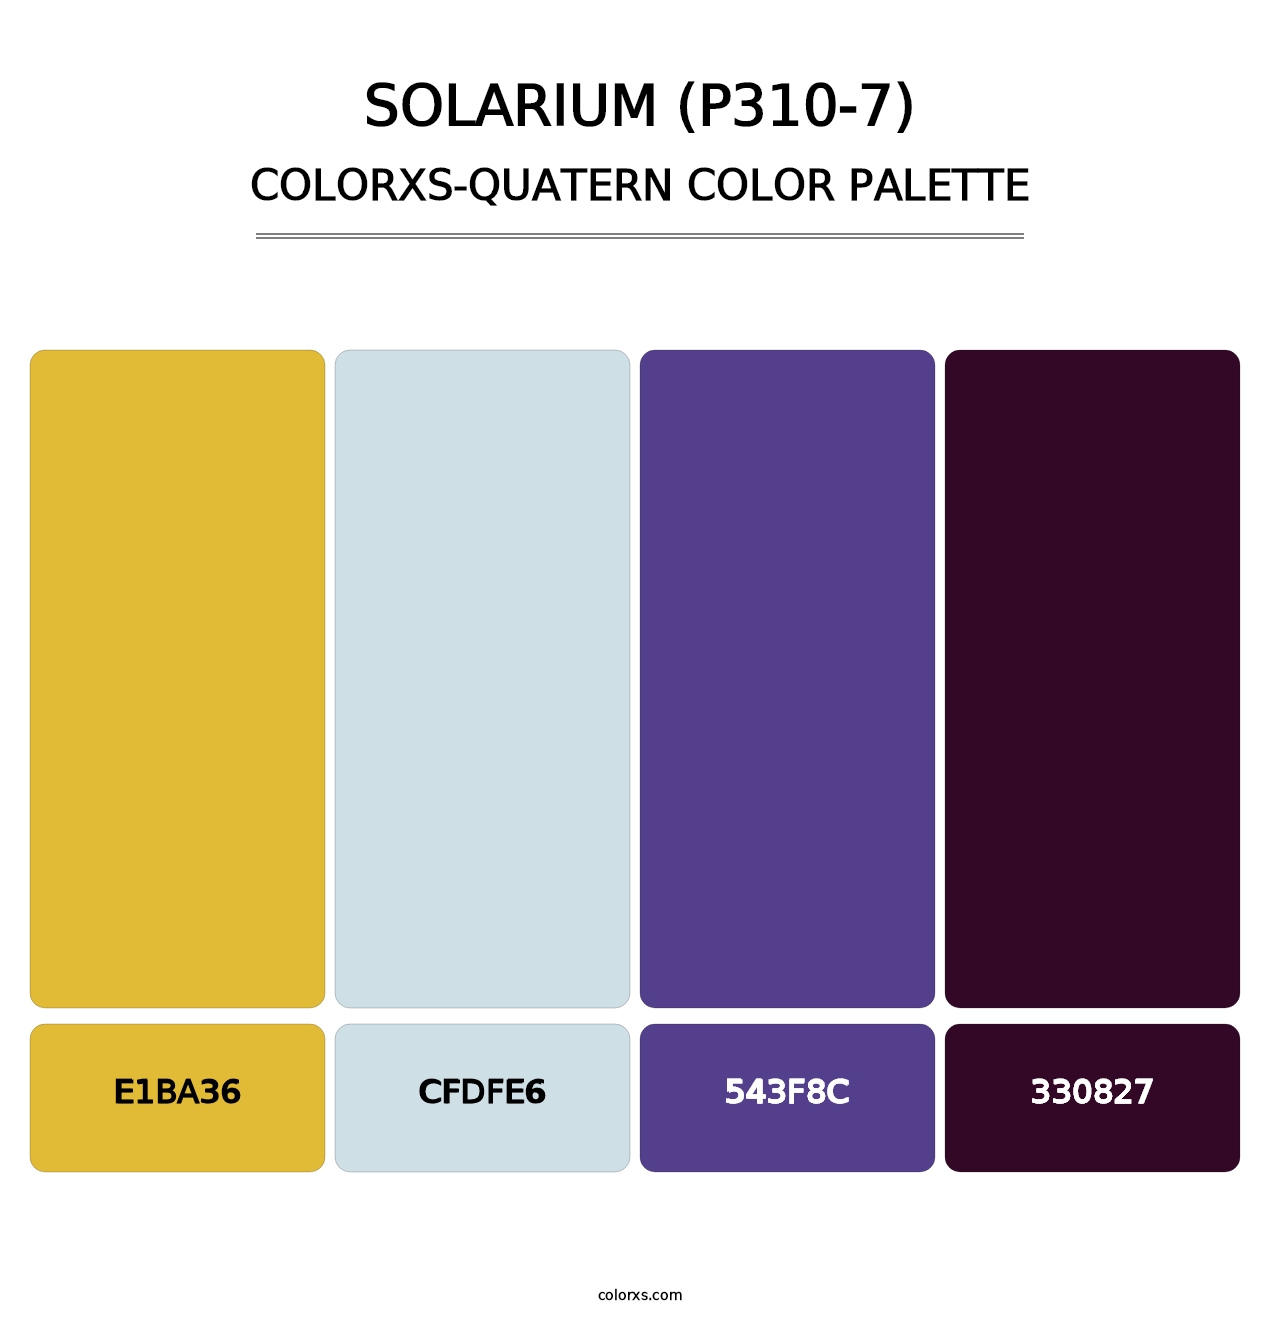 Solarium (P310-7) - Colorxs Quatern Palette